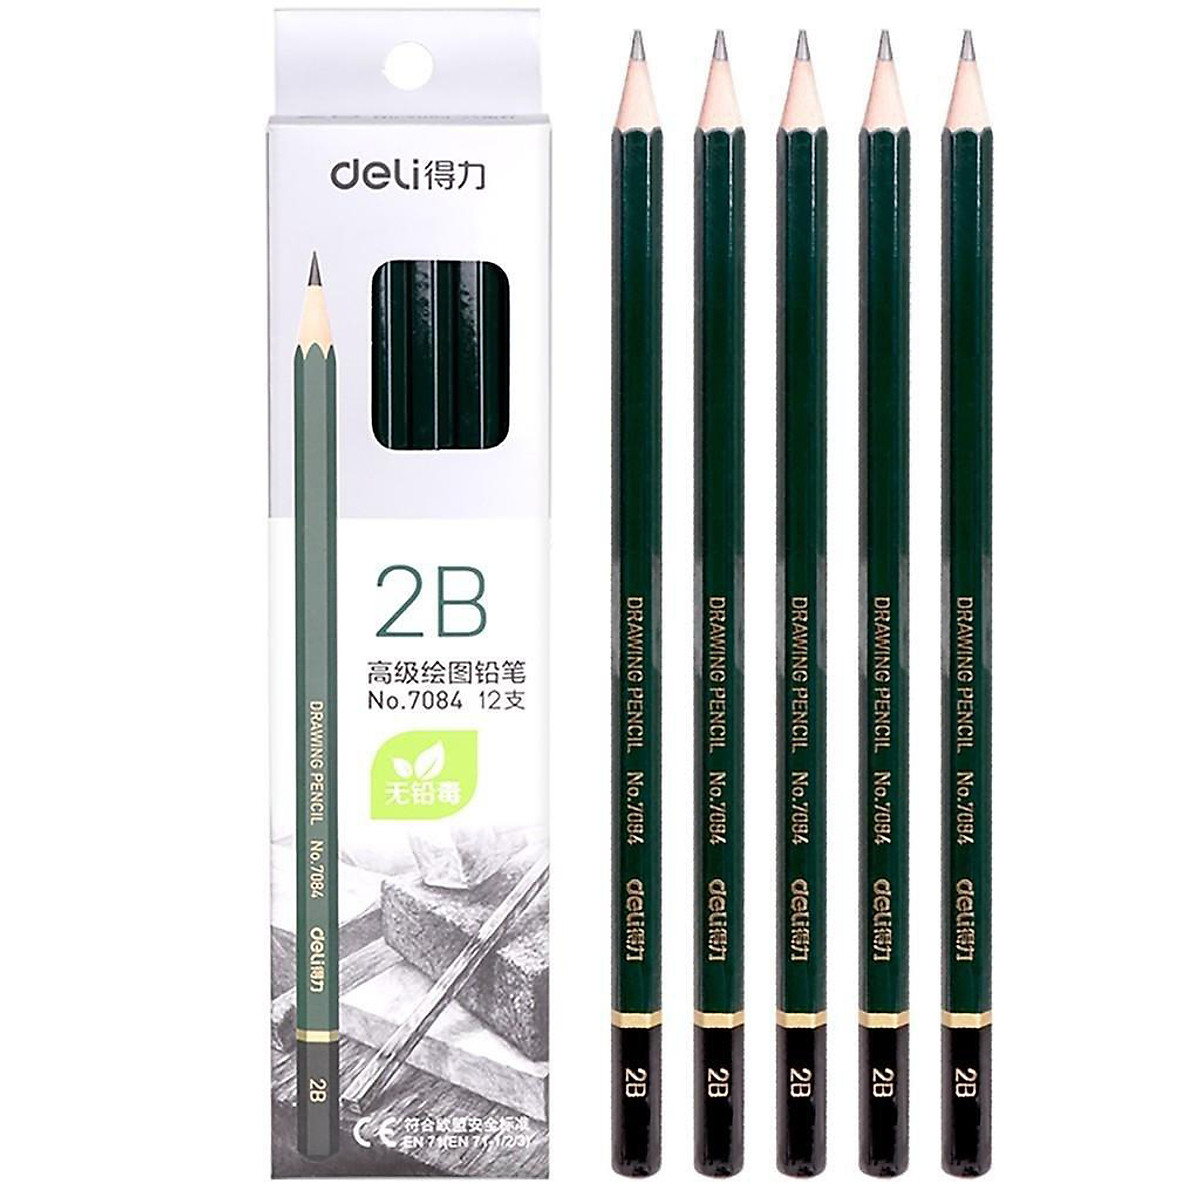 Bút chì 2B sẽ giúp cho những bức vẽ của bạn trở nên tươi sáng và đầy sức sống hơn bao giờ hết. Hãy đến xem hình vẽ liên quan và cảm nhận sự khác biệt mà bút chì 2B mang lại cho các tác phẩm của bạn!